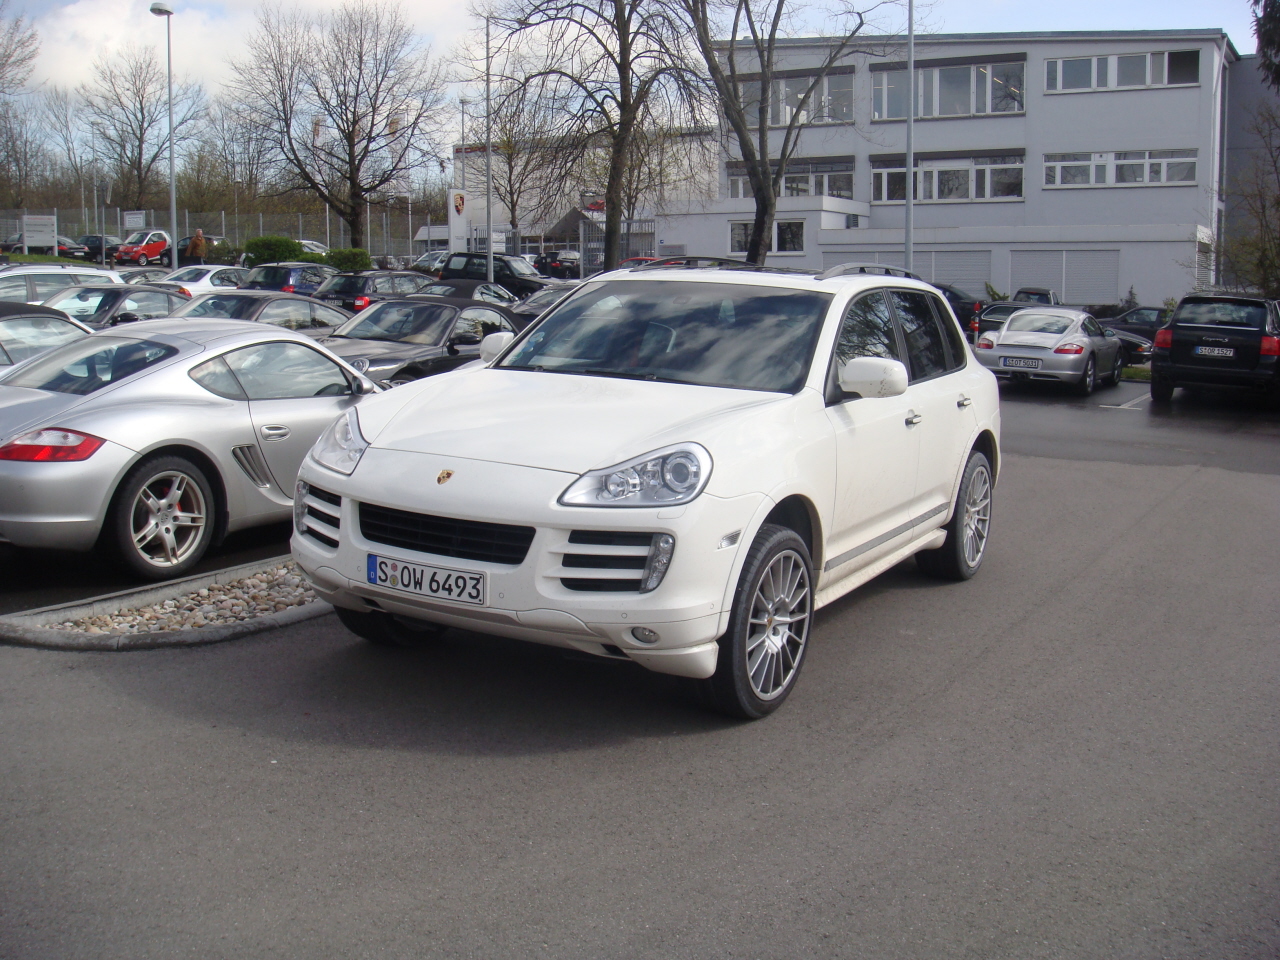 Visita Rapida a Porsche / Fast Visit to Porsche-cayennes04.JPG